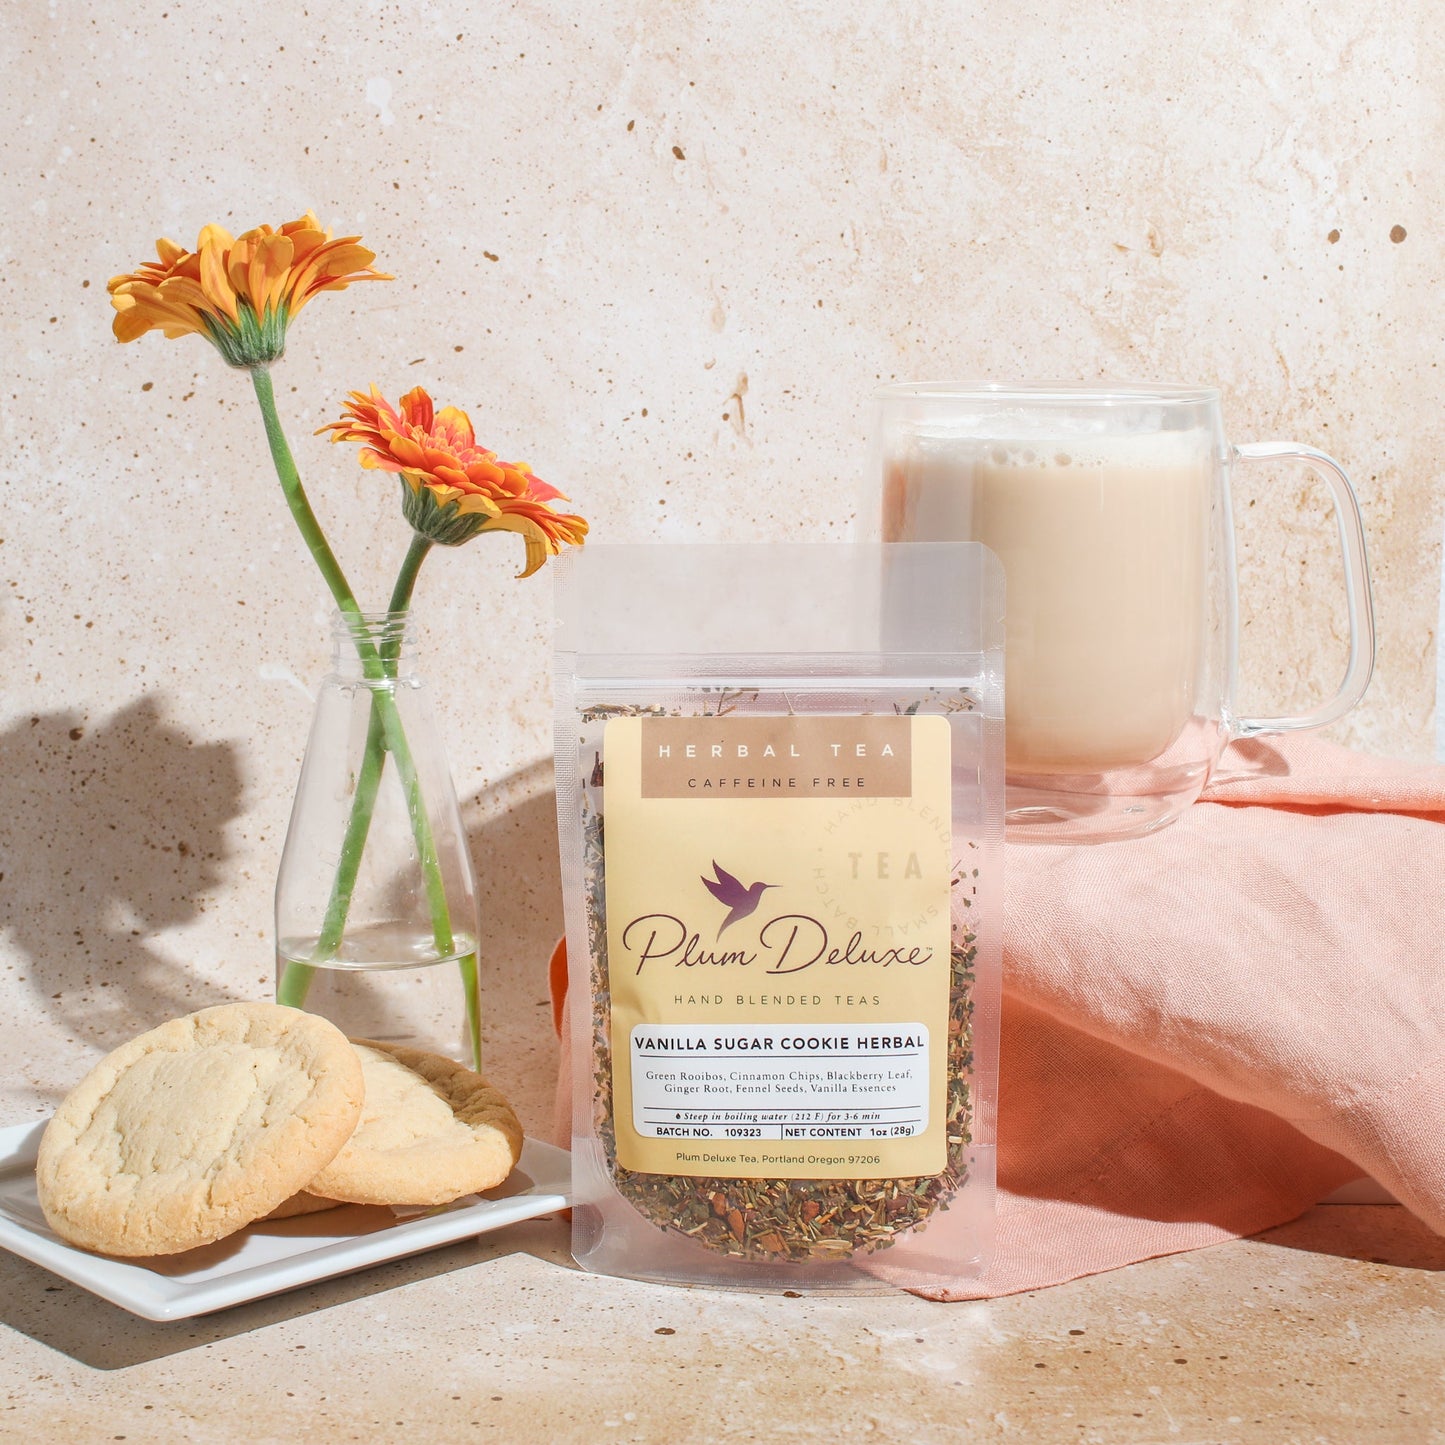 Vanilla Sugar Cookie Herbal Dessert Tea by Plum Deluxe Tea